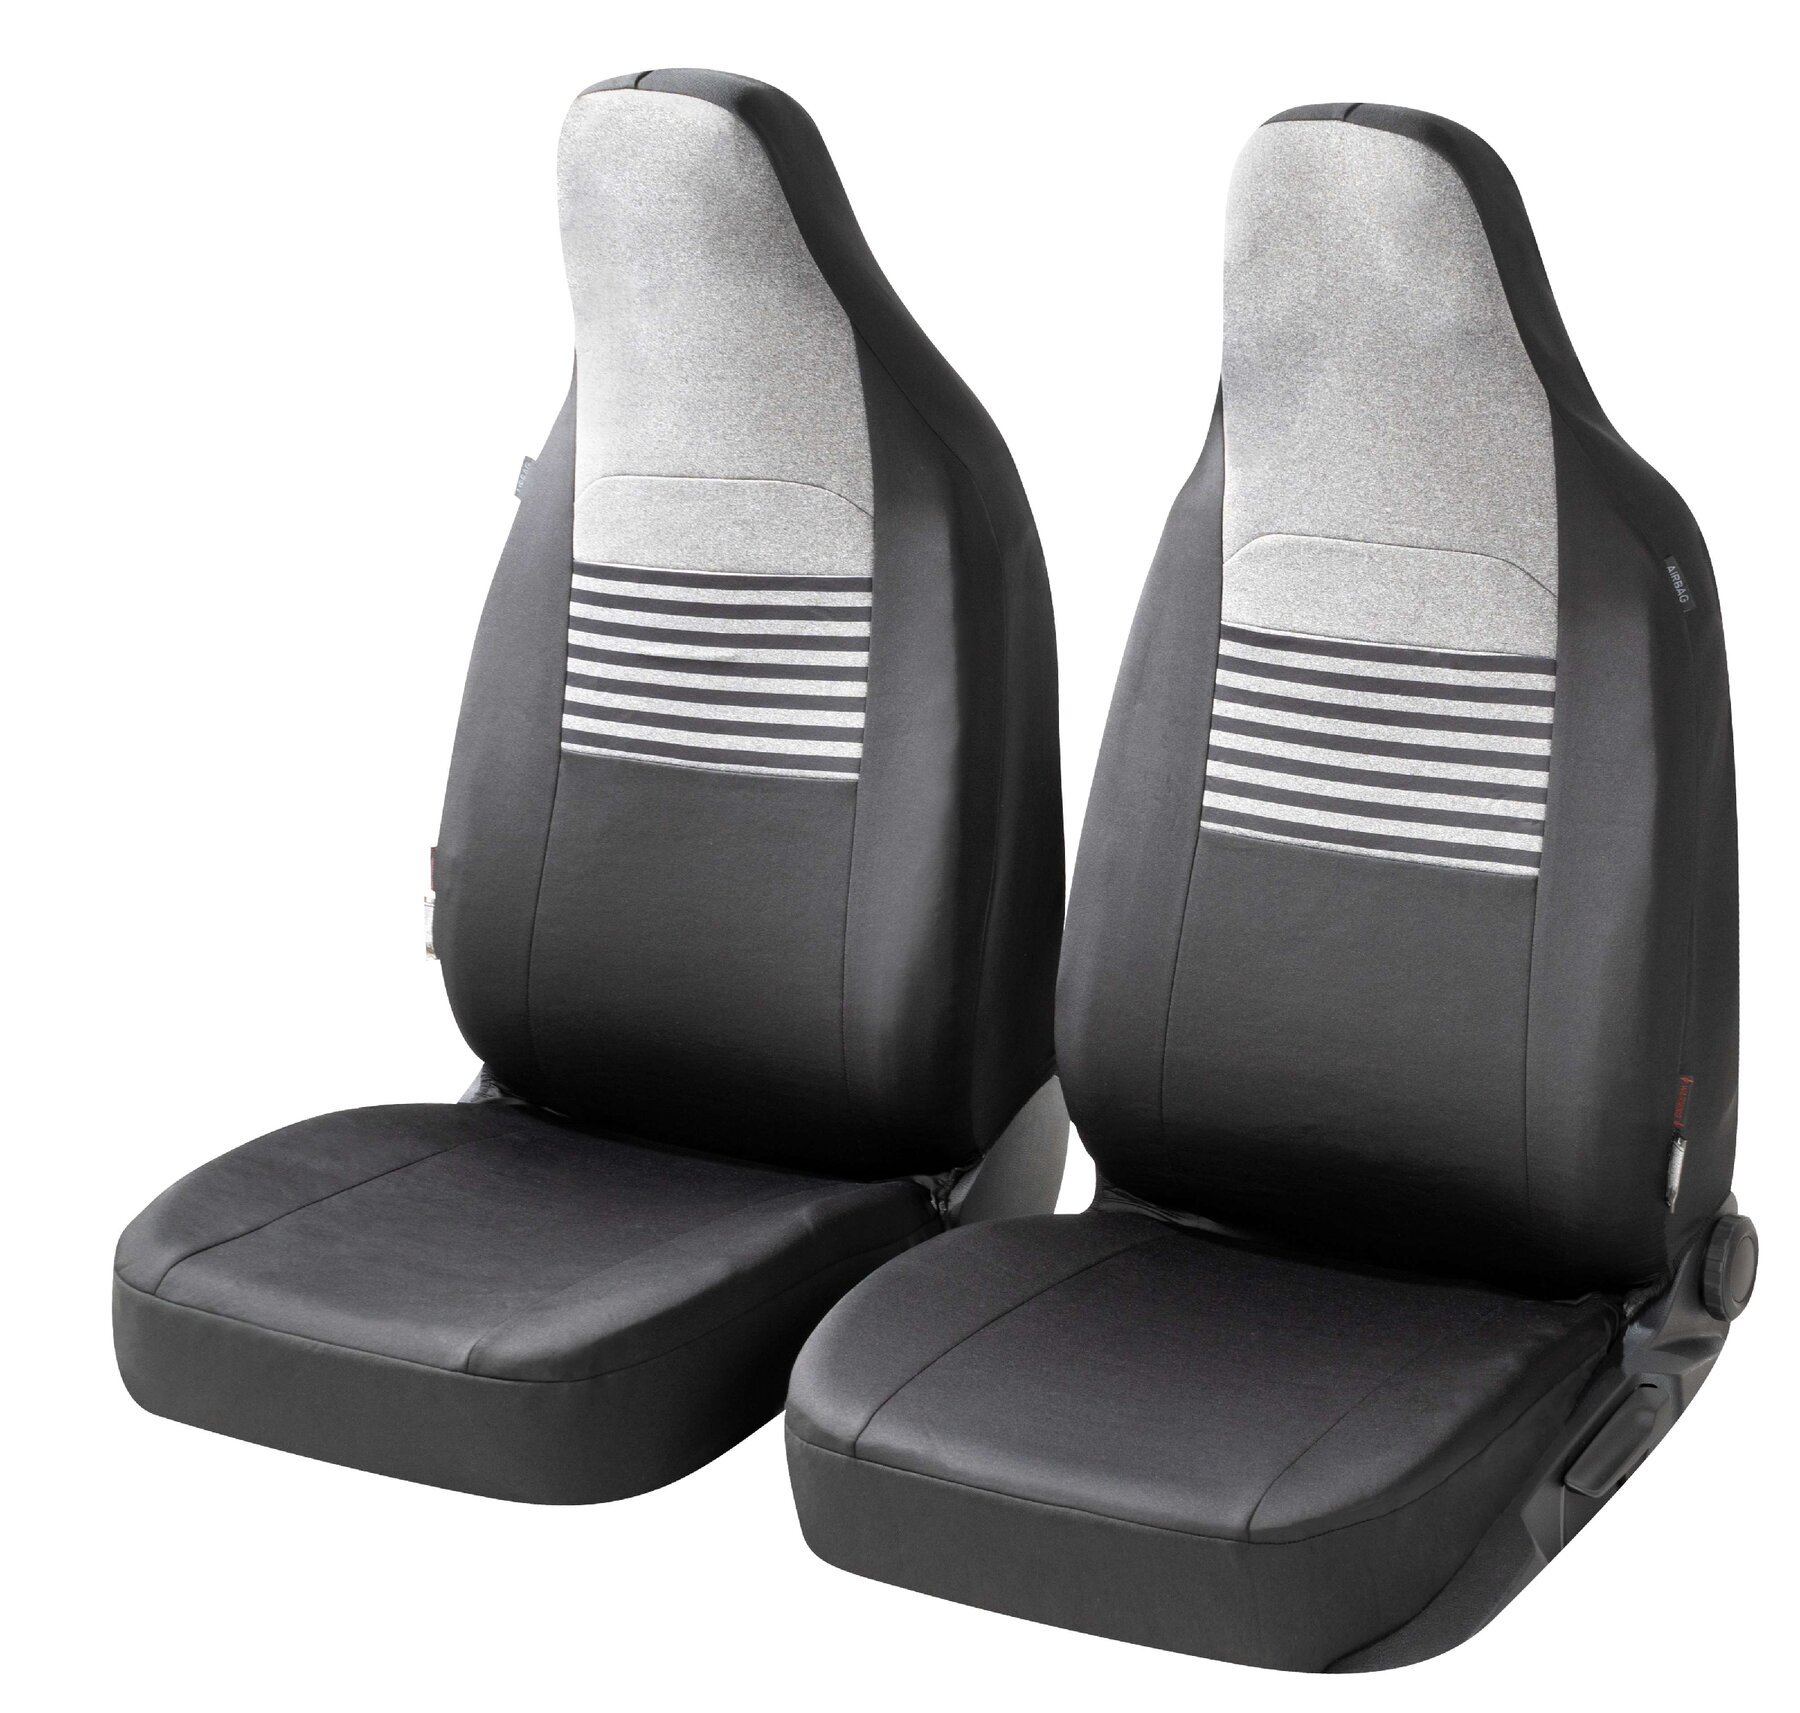 ZIPP IT Premium Coprisedili Gordon per due sedili anteriori con sistema di chiusura lampo nero/grigio